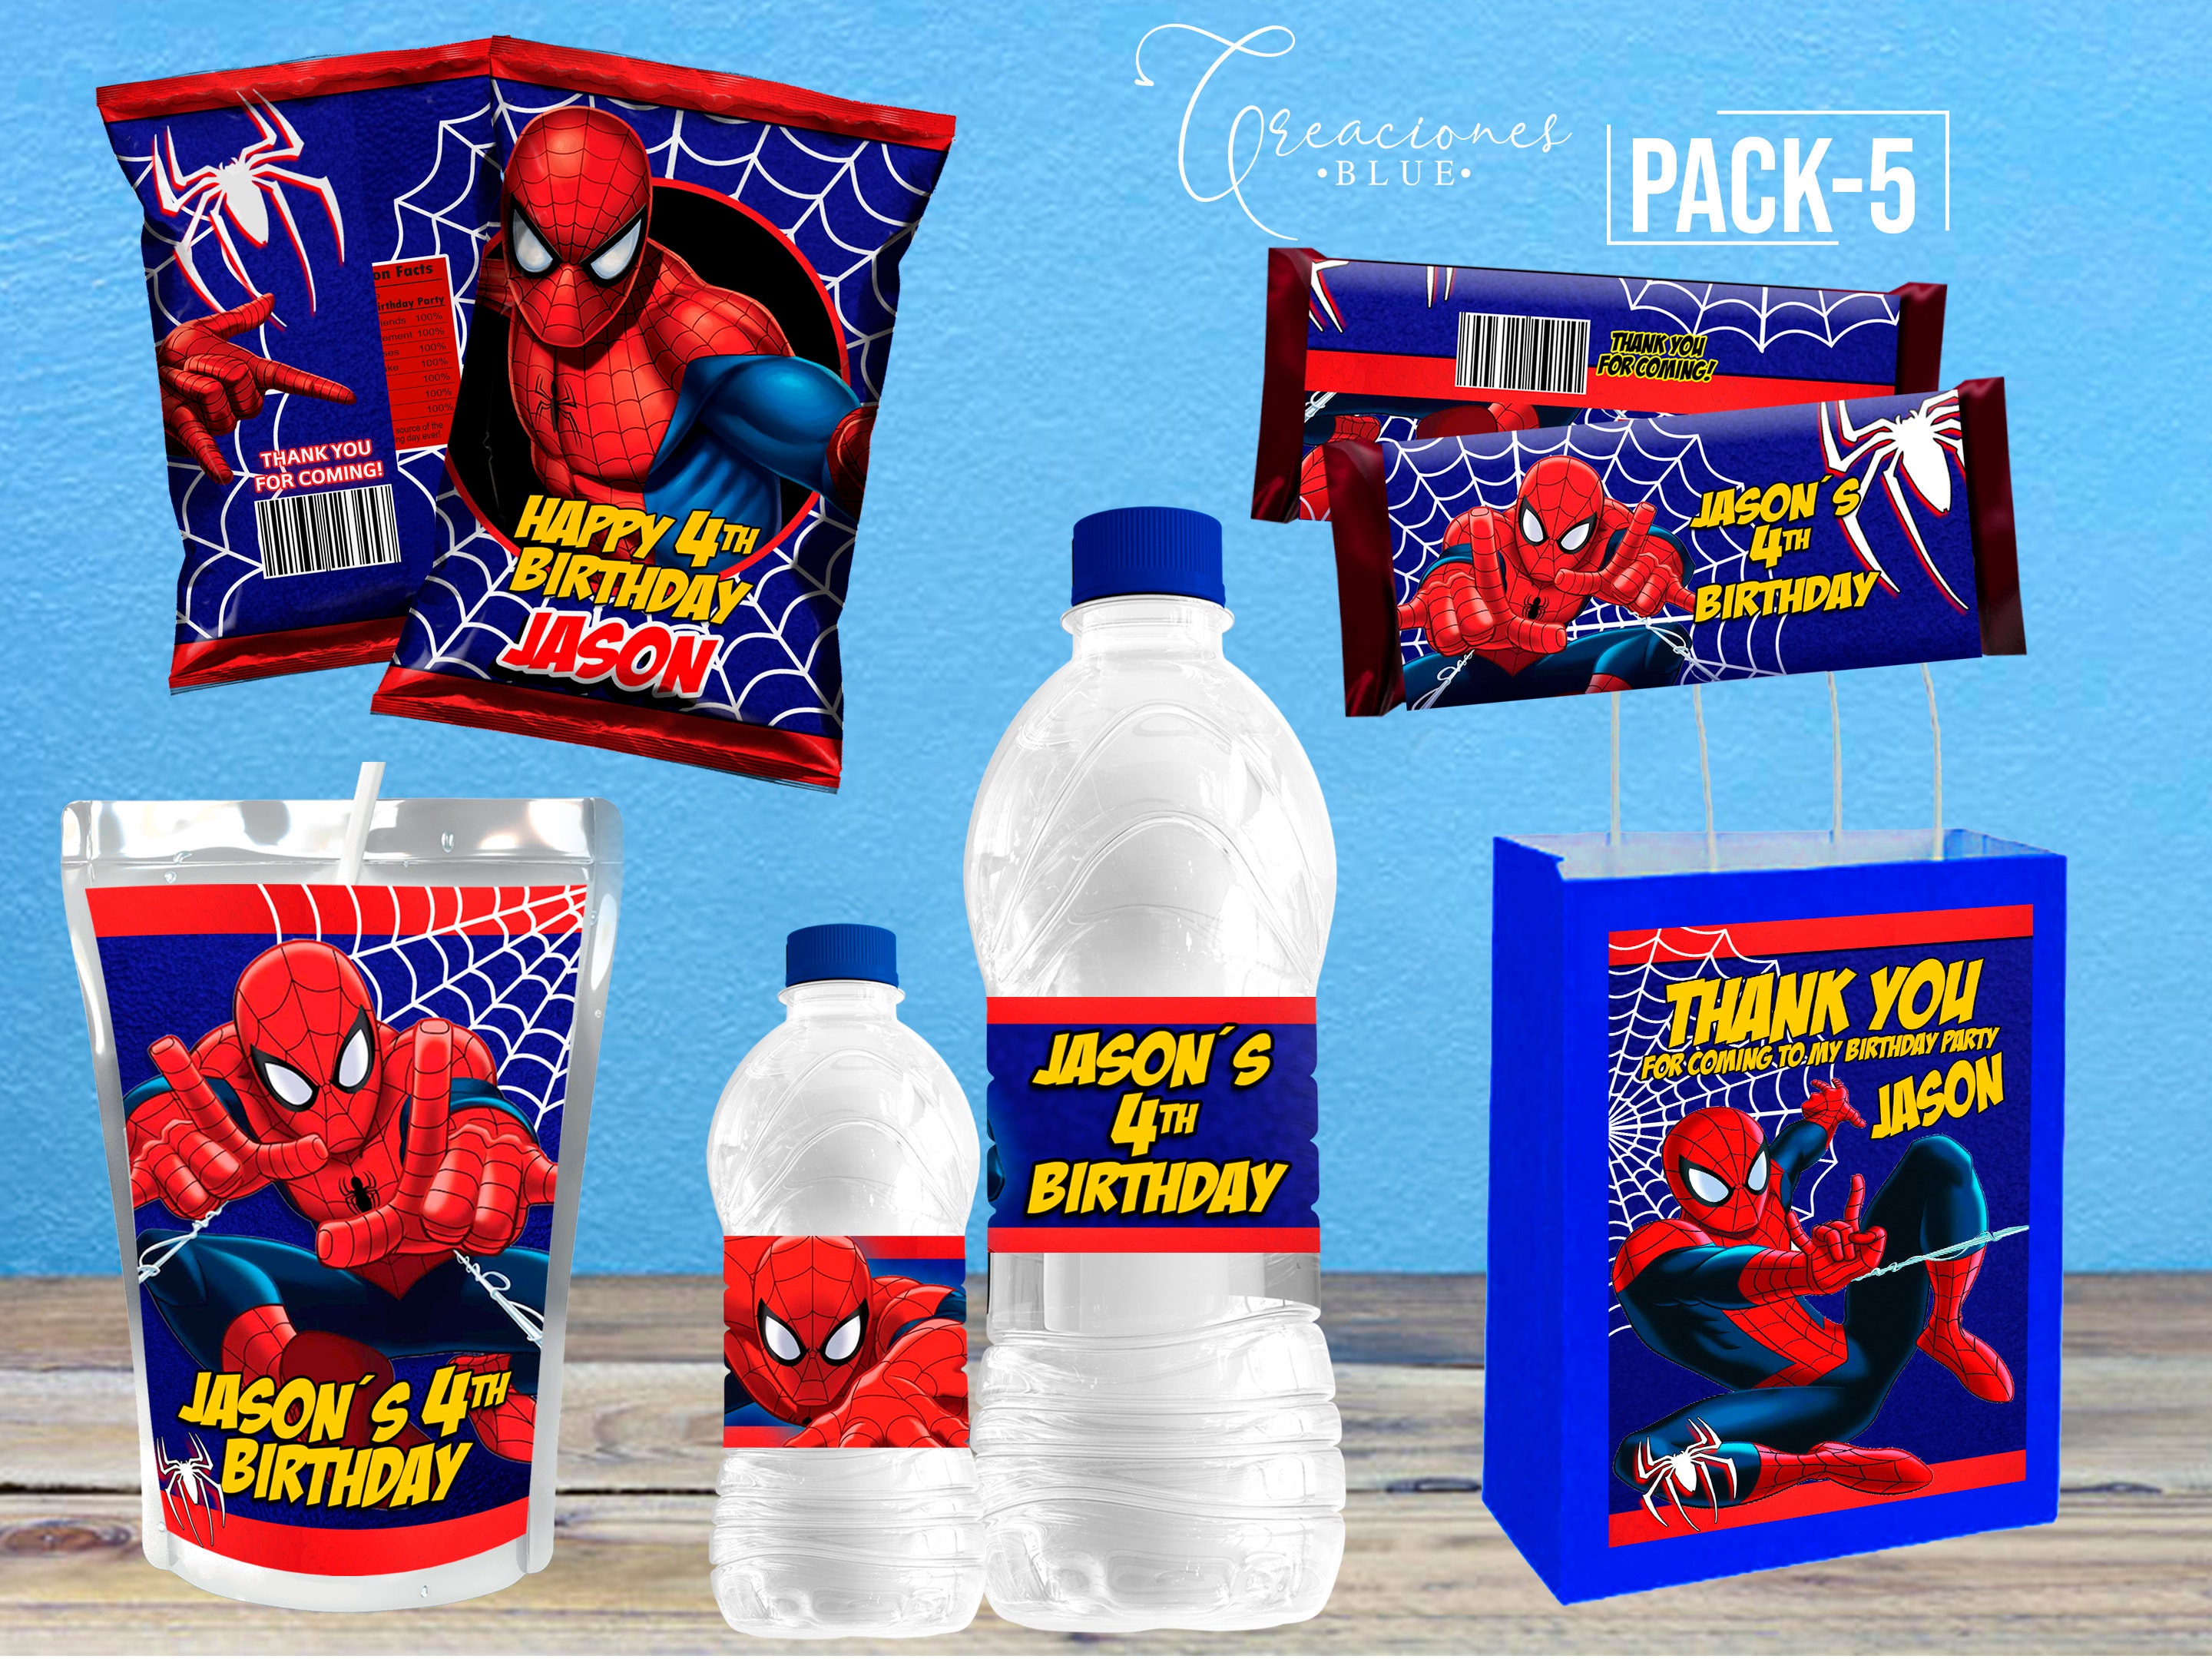 Servicio de decoración para fiestas y eventos infantiles: Decoración  Spiderman 2013